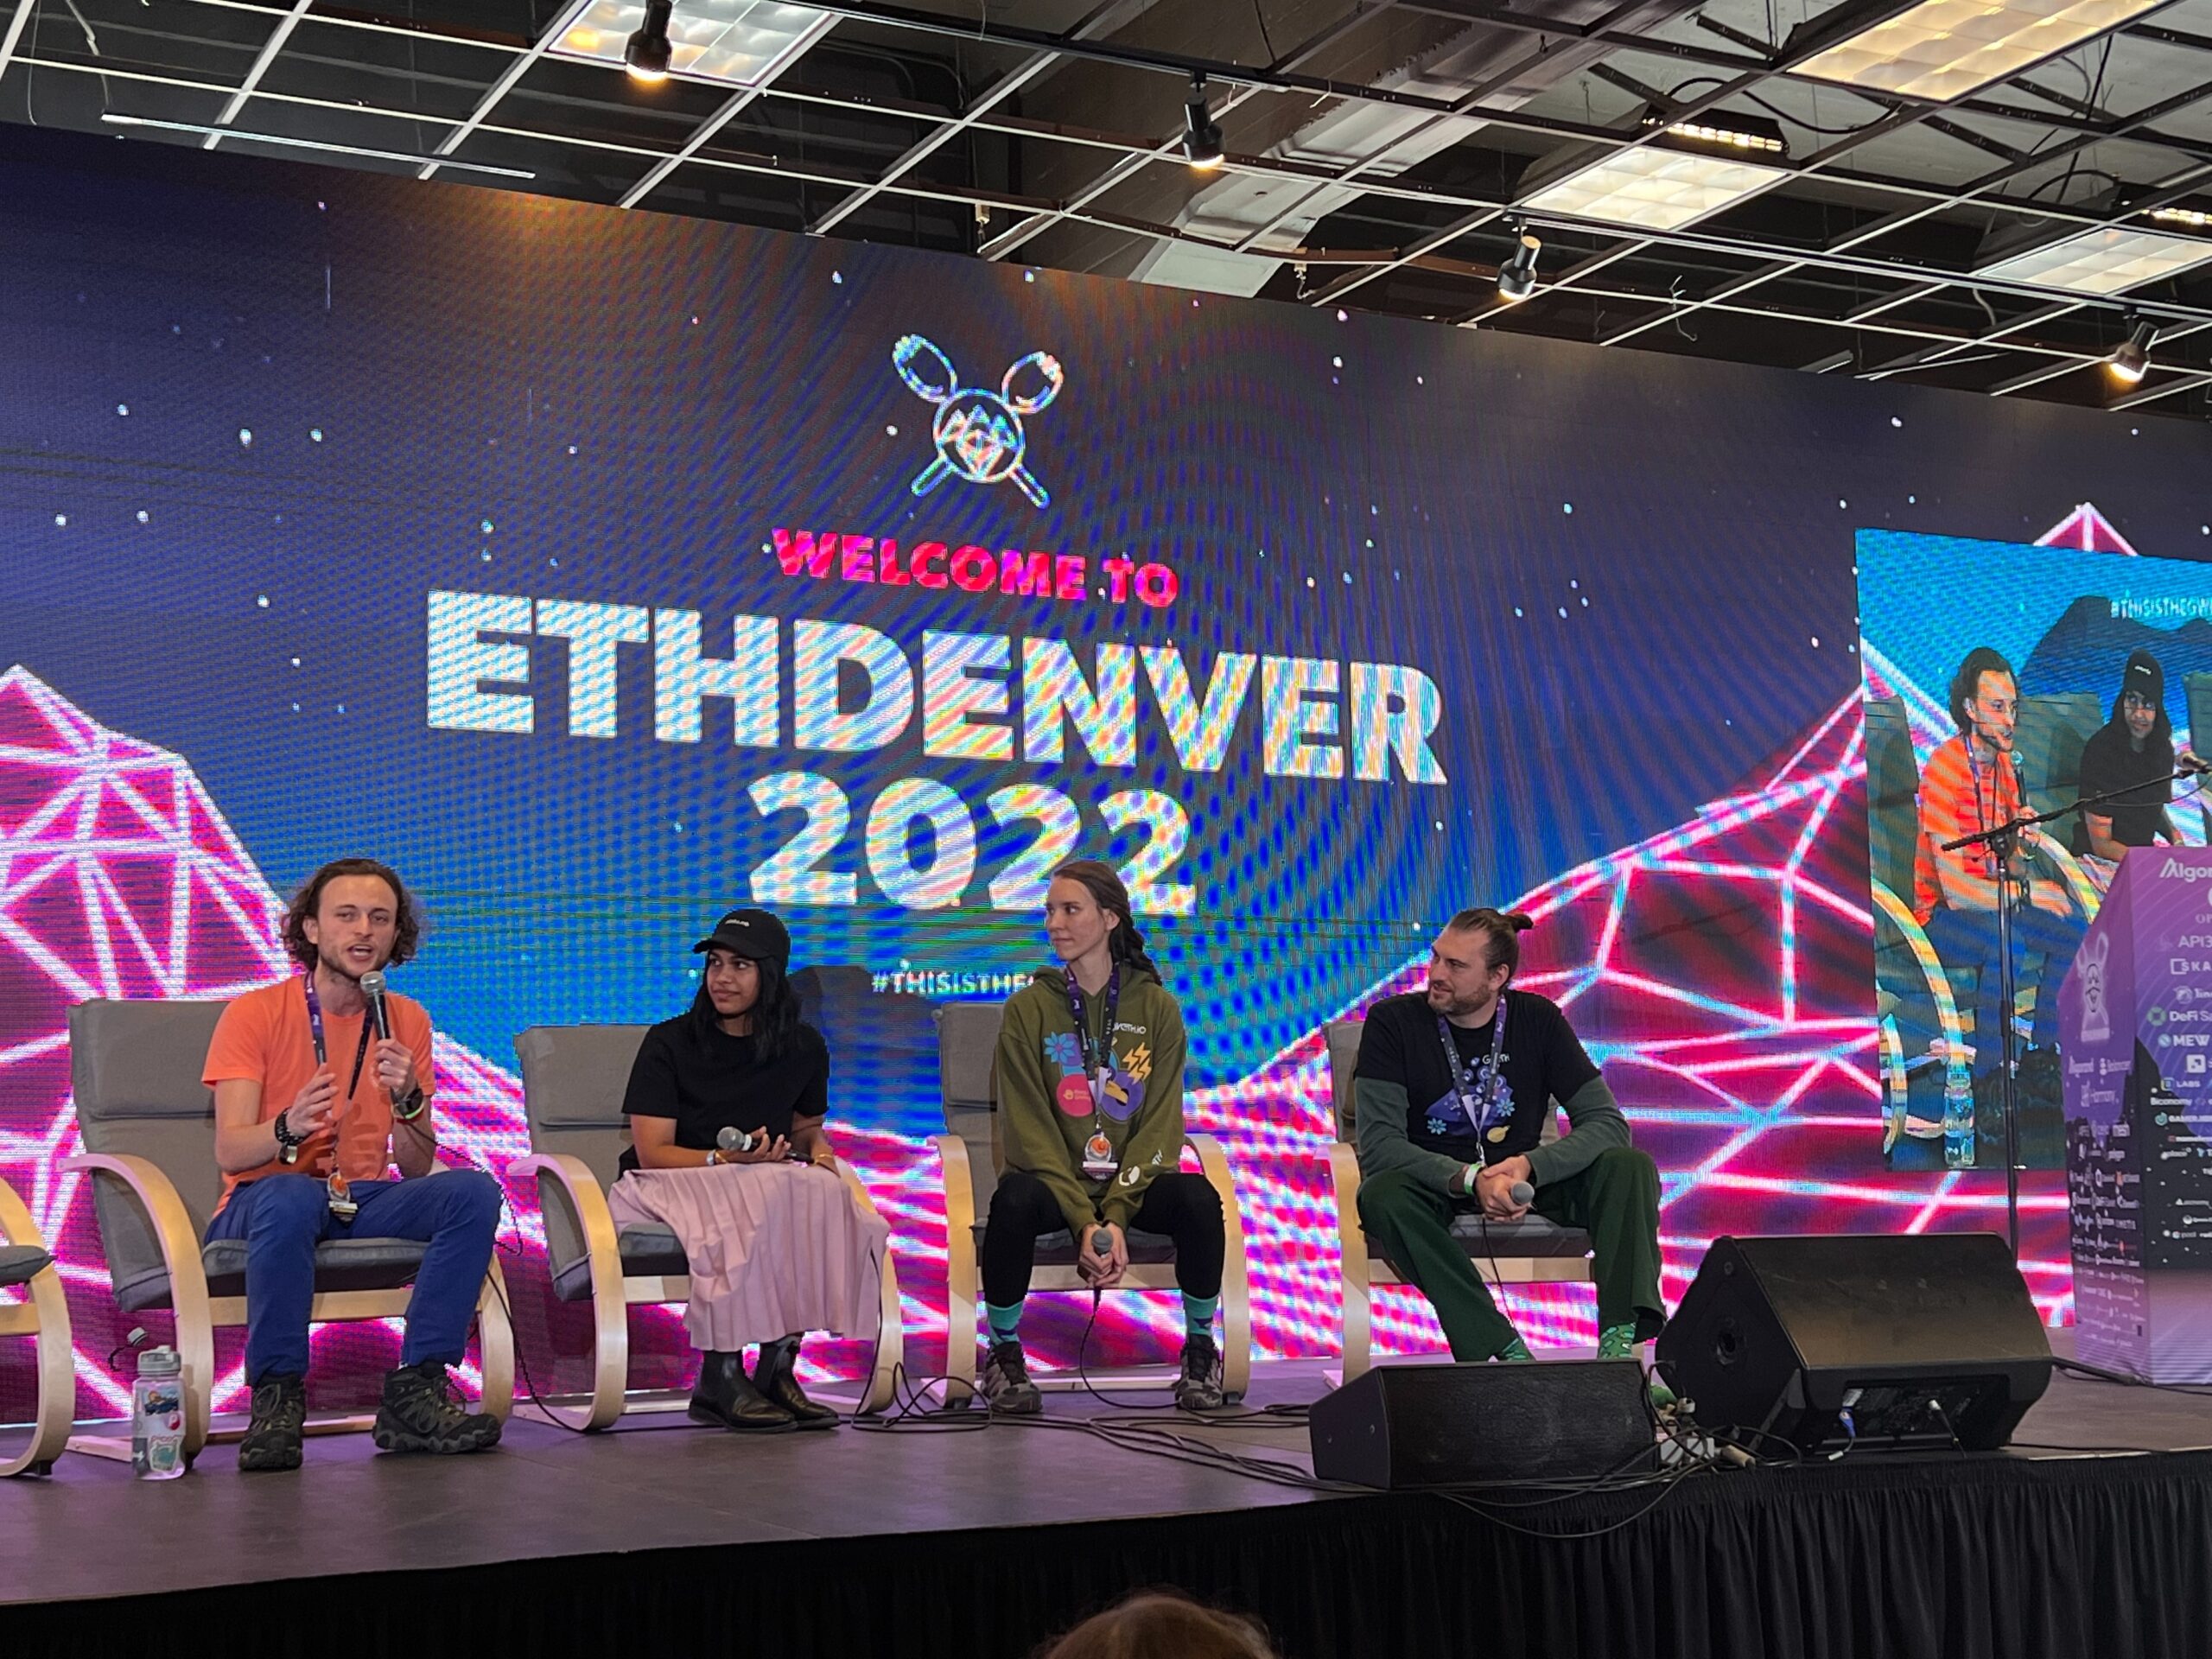 ETHDenver 2022 - conference